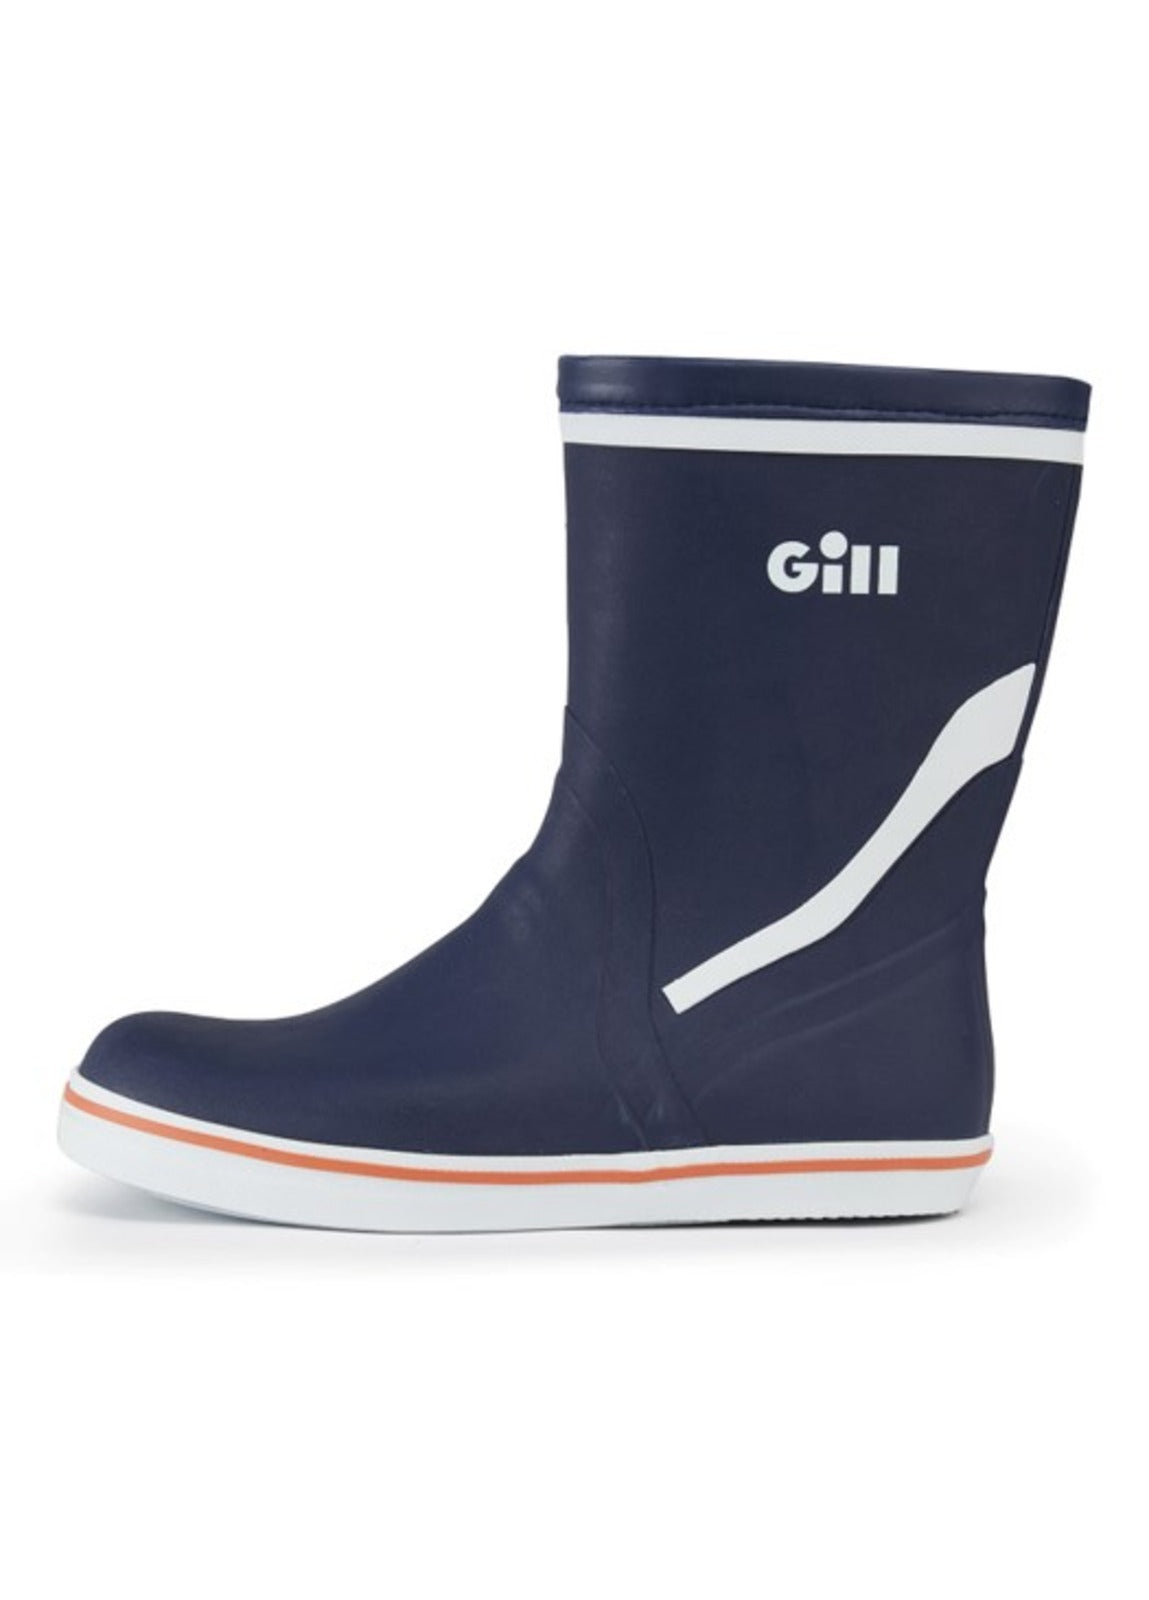 Gill Short Cruising Boot - Dark Blue